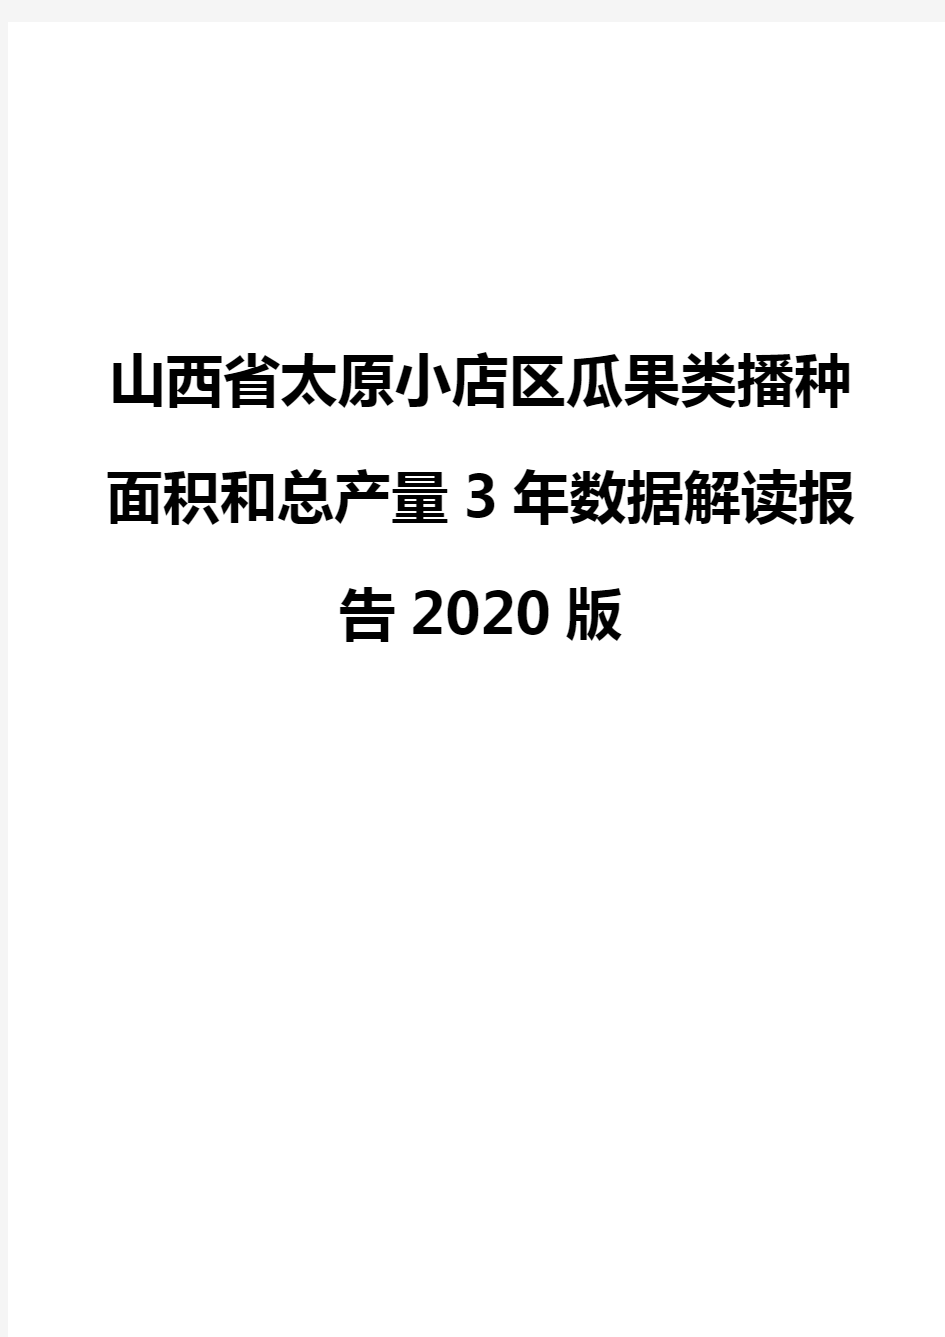 山西省太原小店区瓜果类播种面积和总产量3年数据解读报告2020版